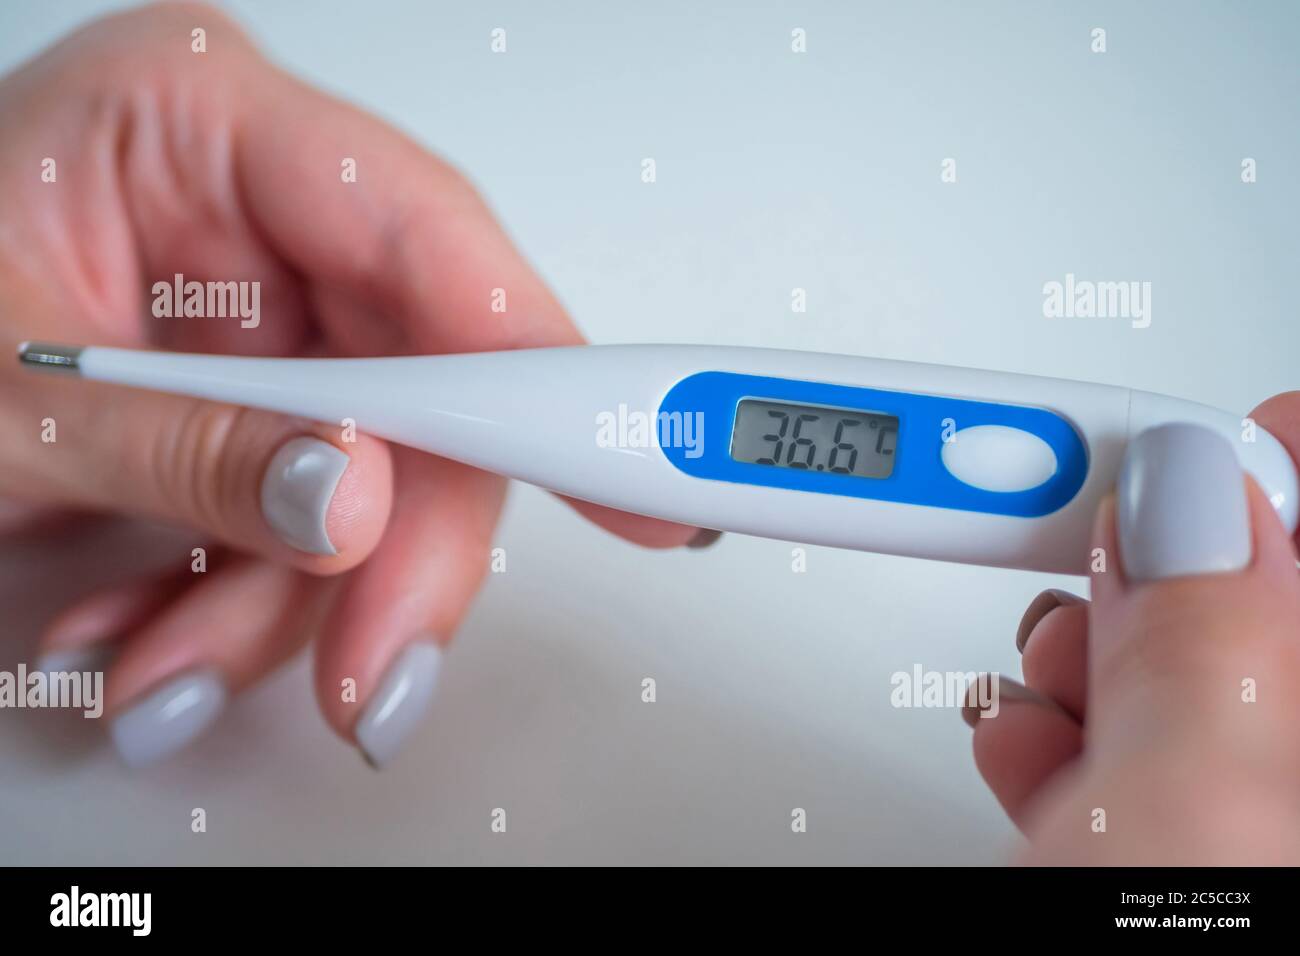 Temperatura Corporal Normal: ¿por Qué Se Establece Entre 35 Y 37 Grados?  VÍDEO | sptc.edu.bd